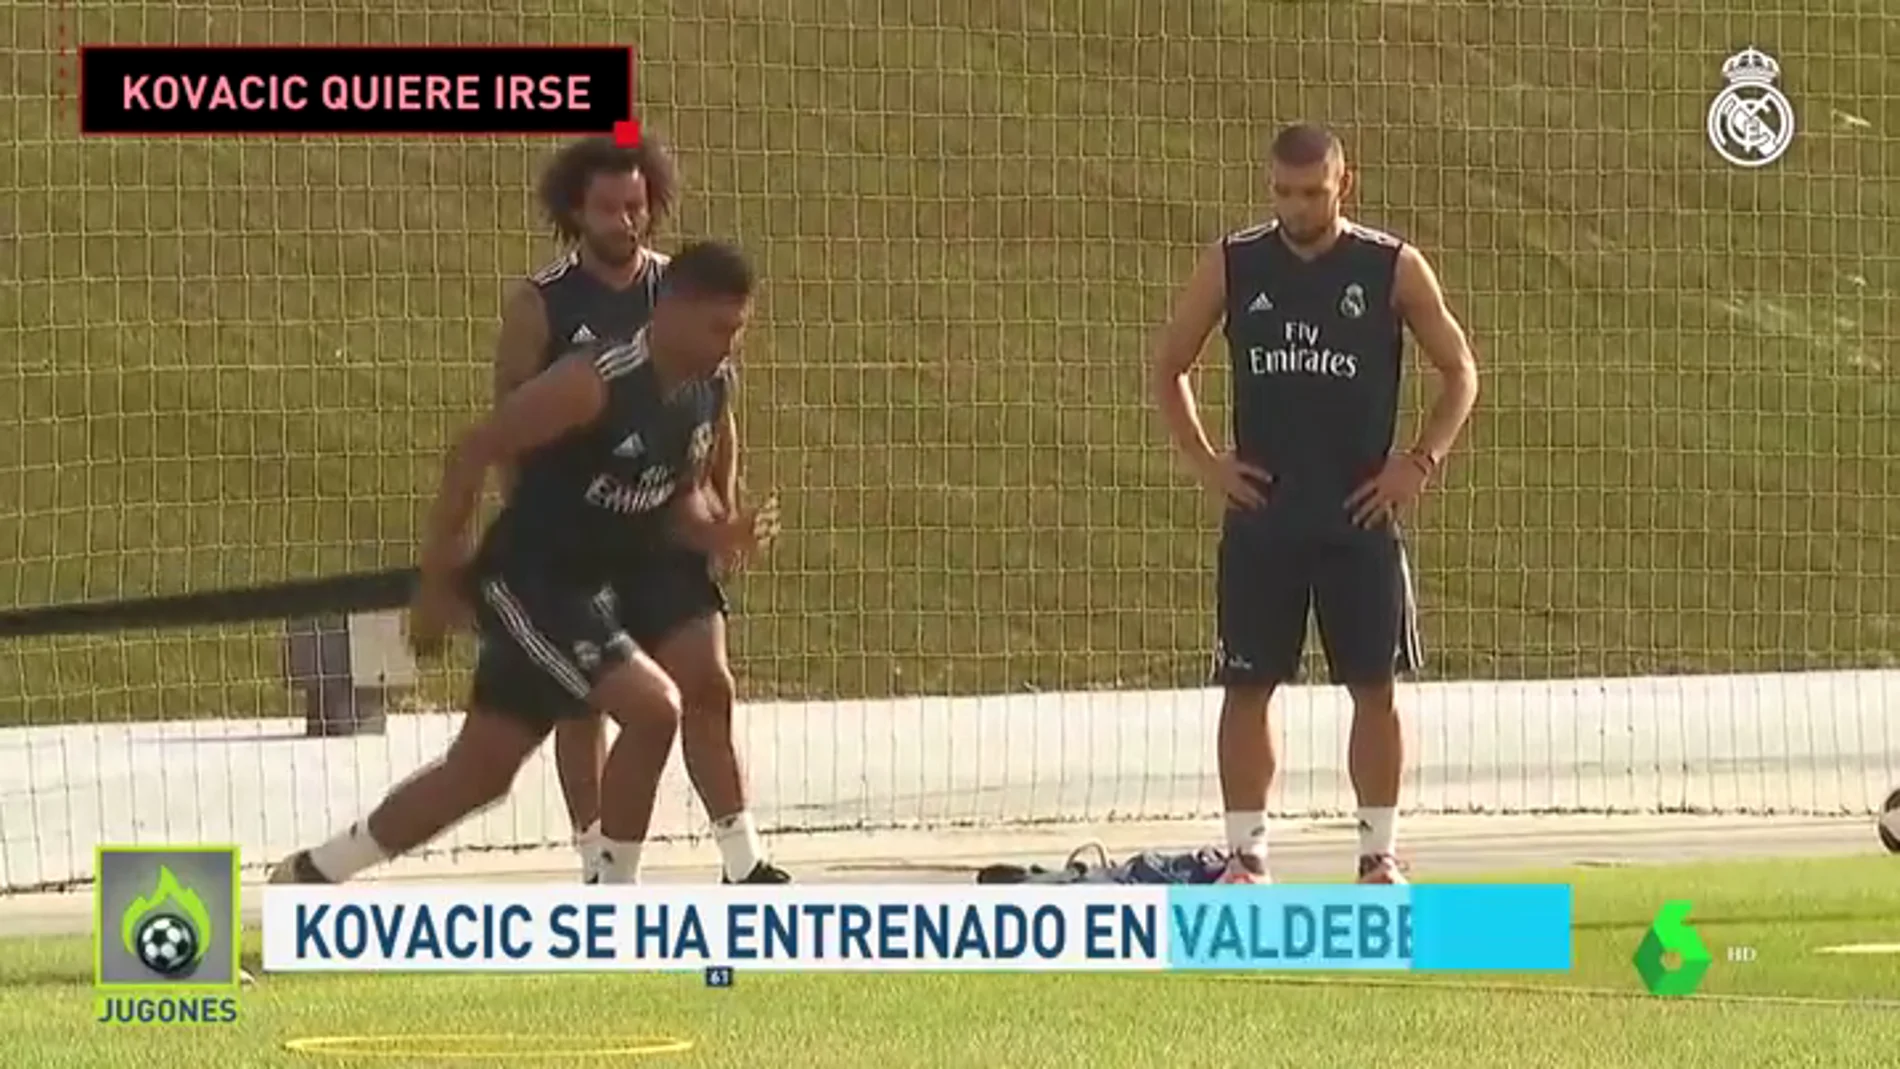 Kovacic se entrena en Valdebebas mientras busca su salida del Real Madrid